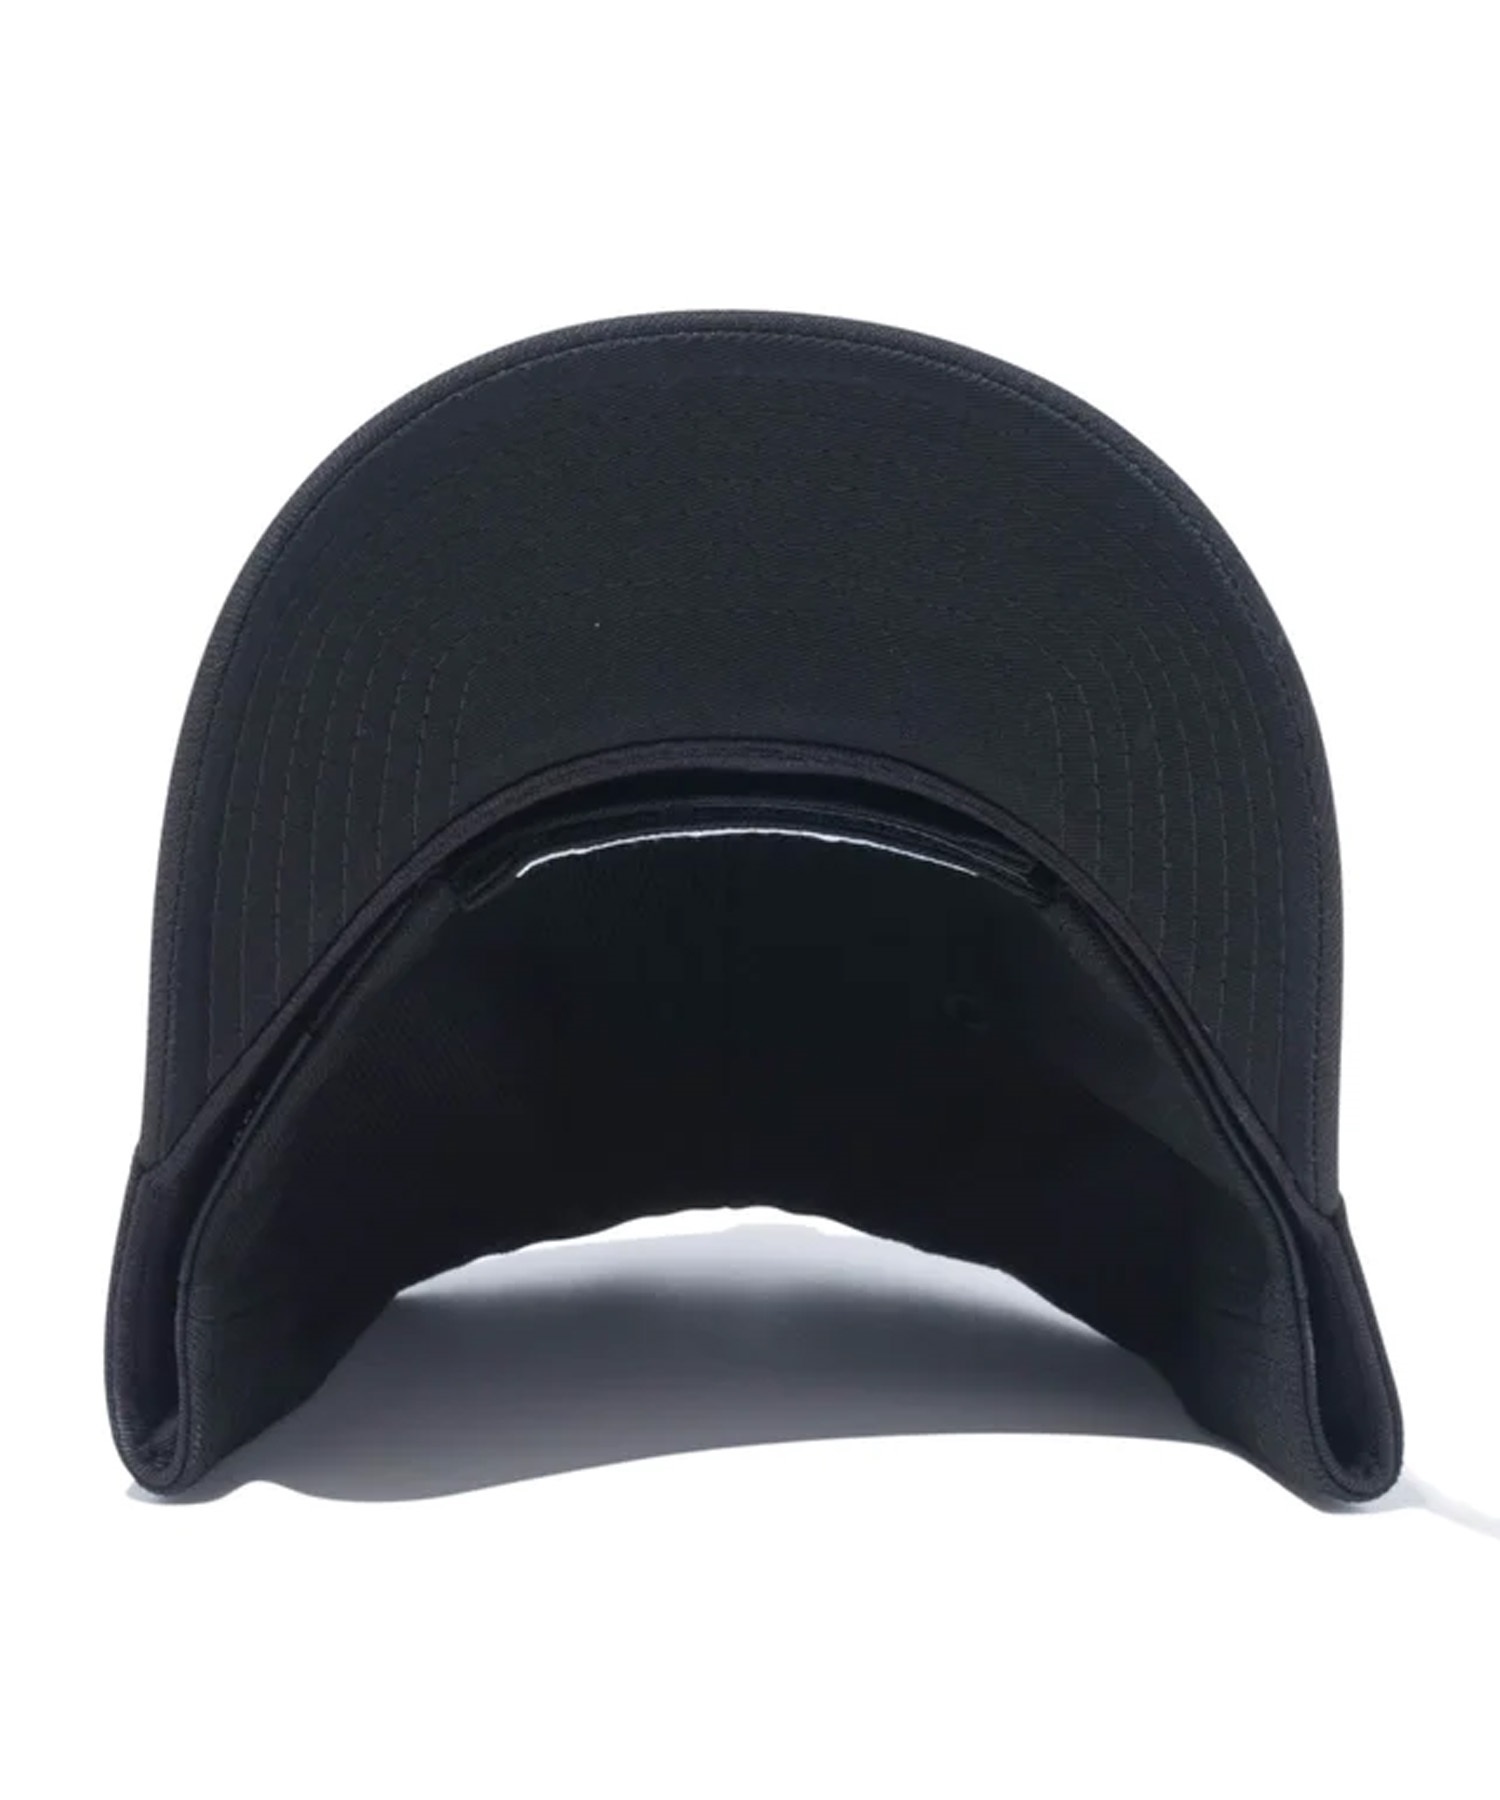 NEW ERA/ニューエラ 9FORTY MLB ニューヨーク・メッツ ウーブンパッチ ブラック キャップ 帽子 フリーサイズ 14109665(BLK-FREE)